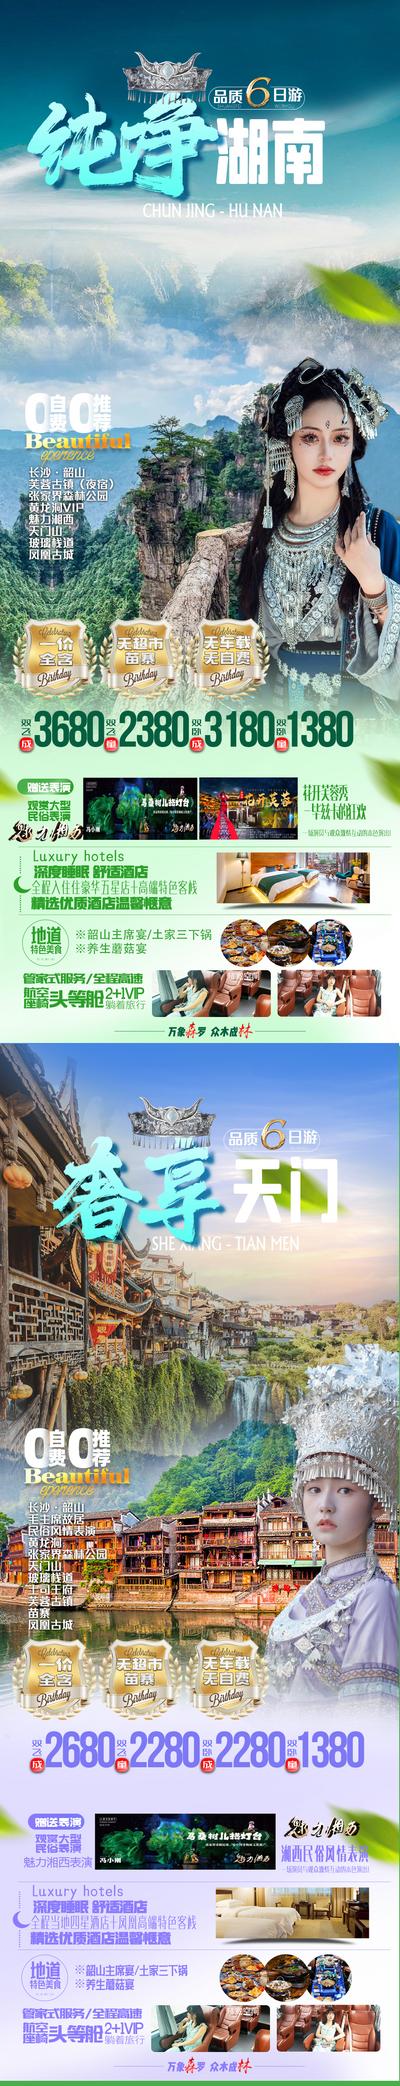 南门网 广告 海报 旅游 张家界 凤凰古城 系列 天门山 系列 品质 高端